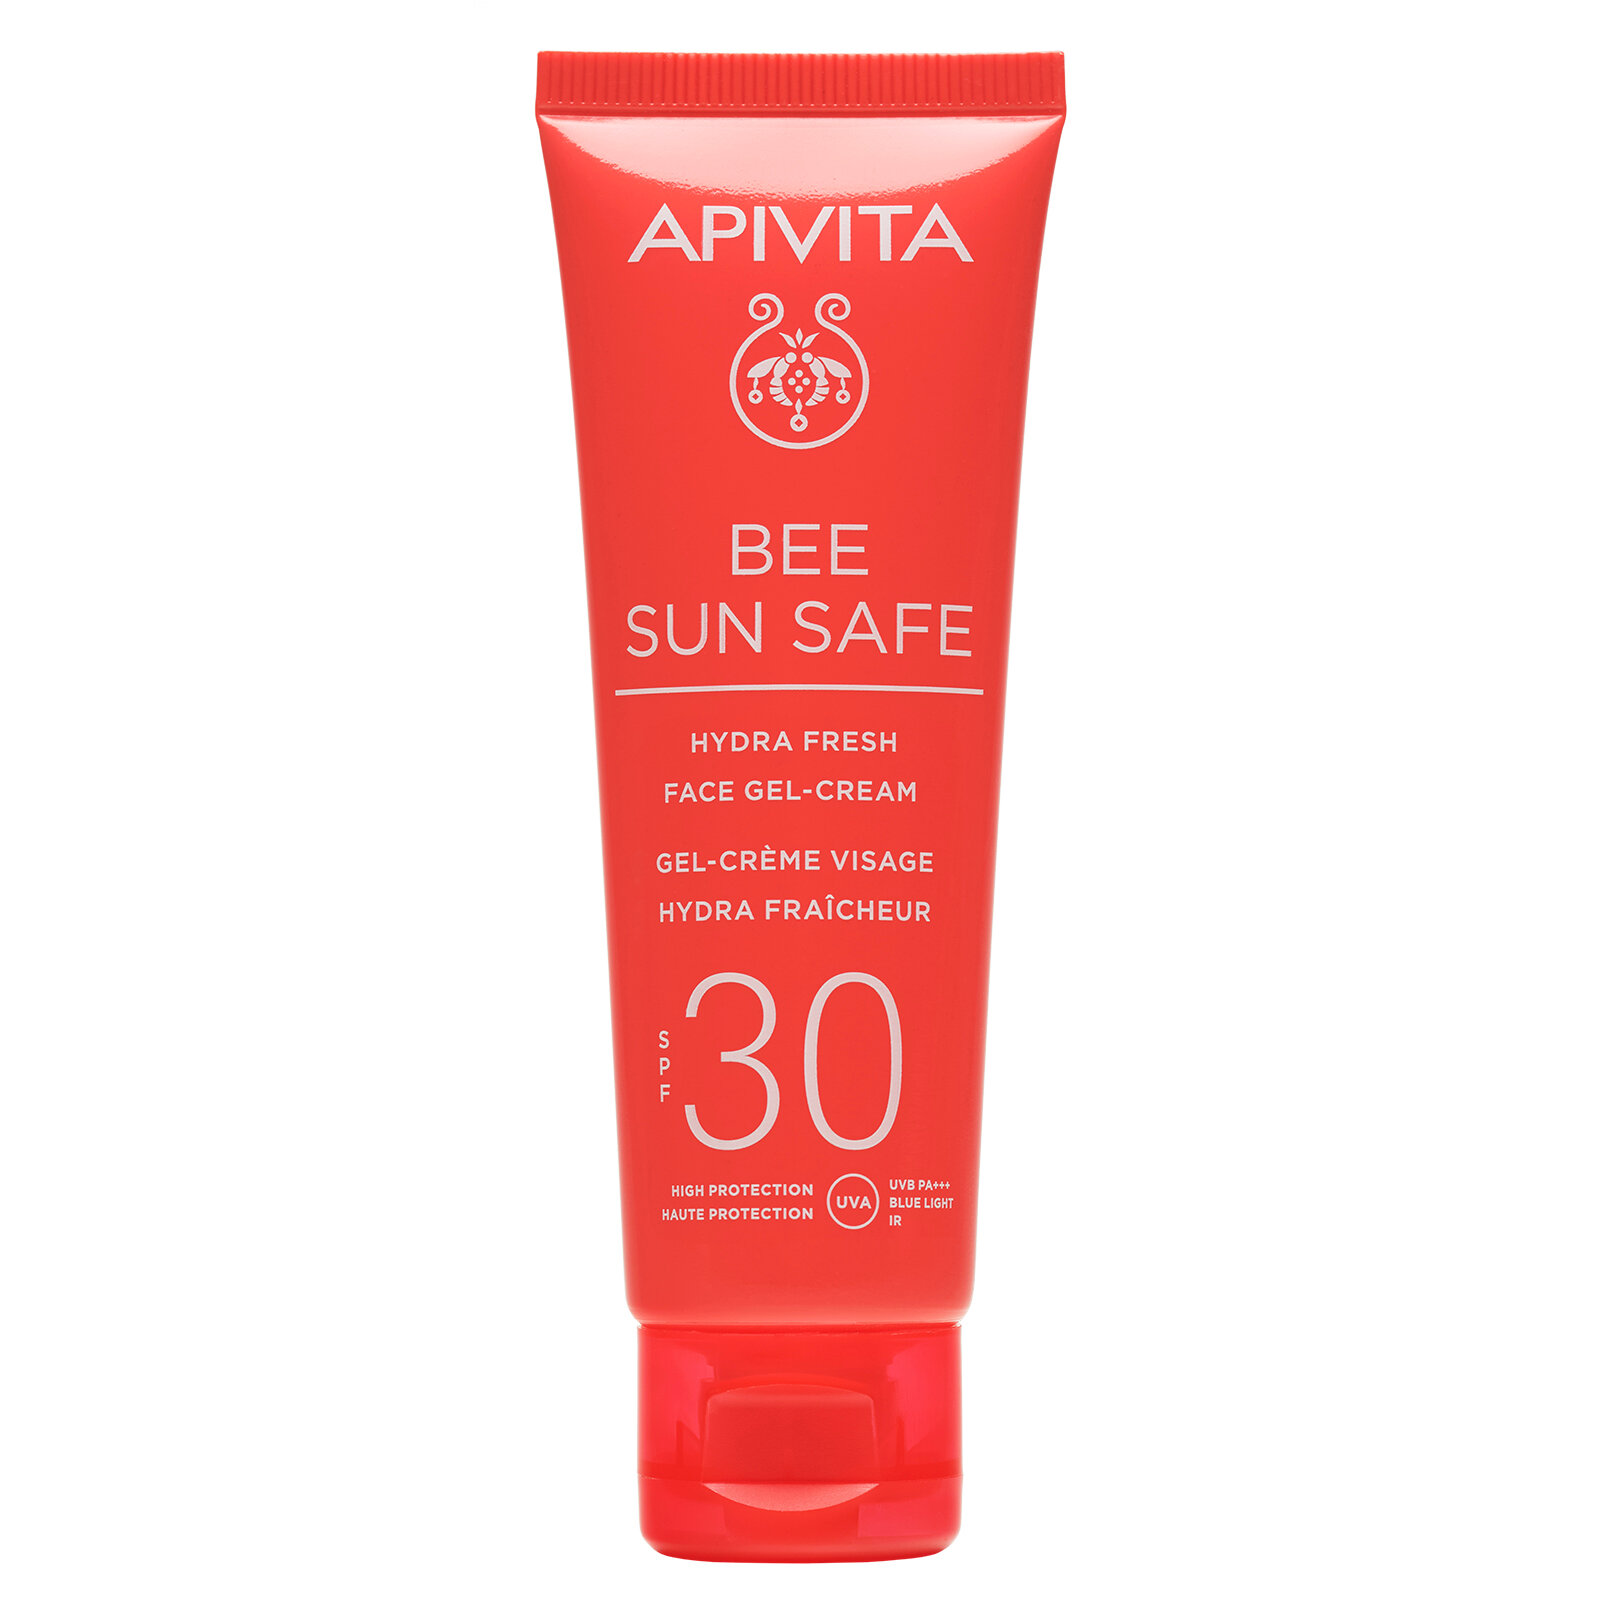 Apivita Солнцезащитный свежий увлажняющий гель-крем для лица SPF 30, 50 мл (Apivita, Bee Sun Safe) - фото №3